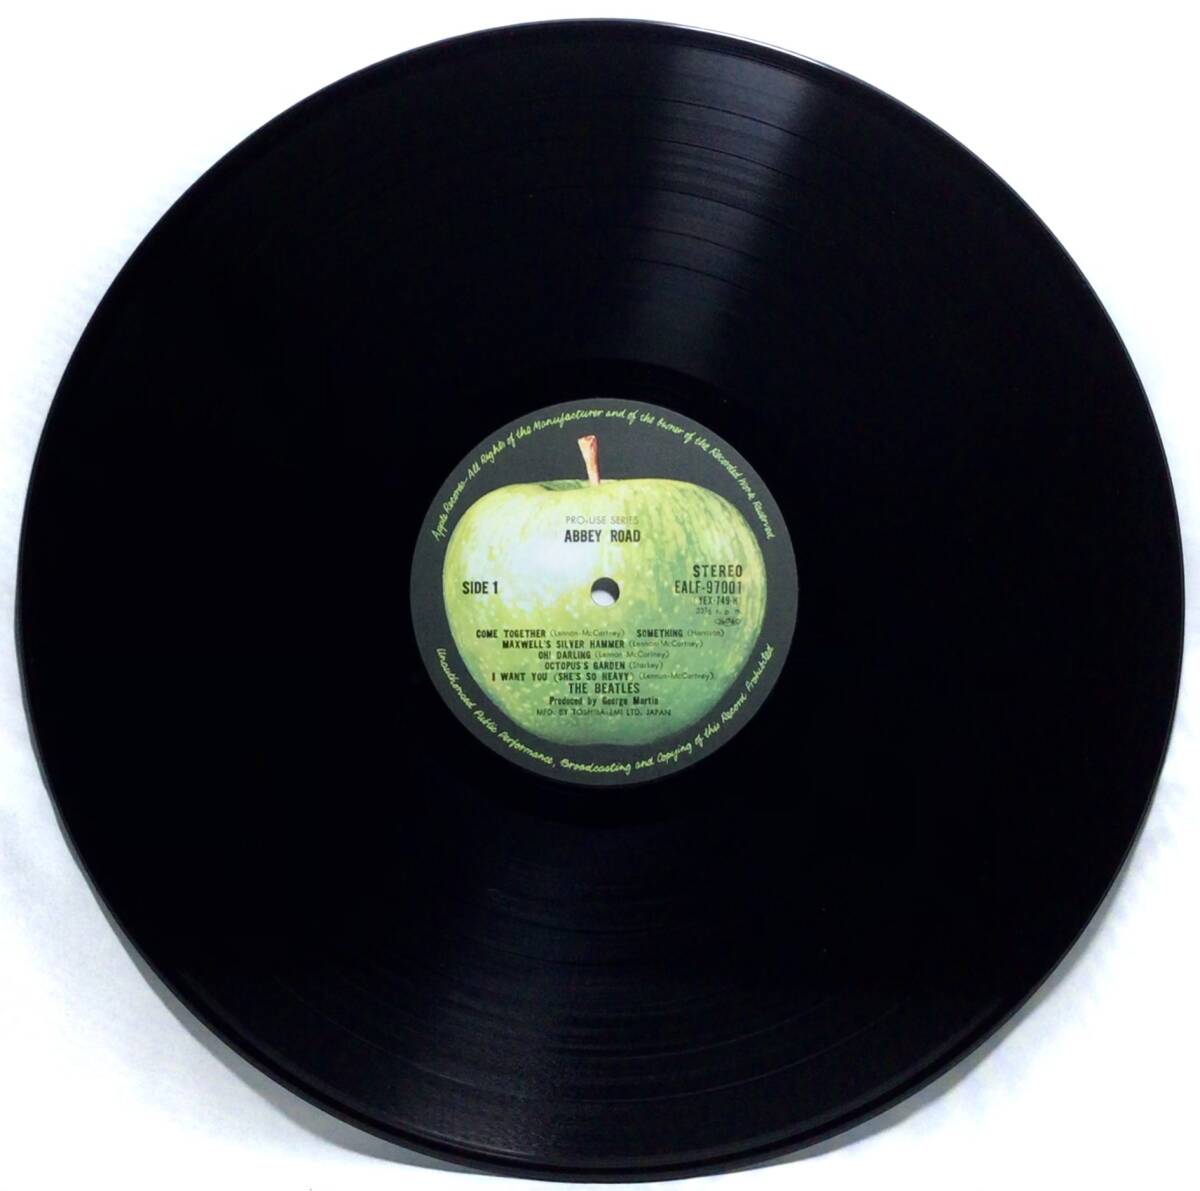 【日LPプロユース】 ザ・ビートルズ THE BEATLES アビイ・ロード ABBEY ROAD 1978 PRO-USE SERIES LPレコード EALF-97001 シリーズ 試聴済_画像6